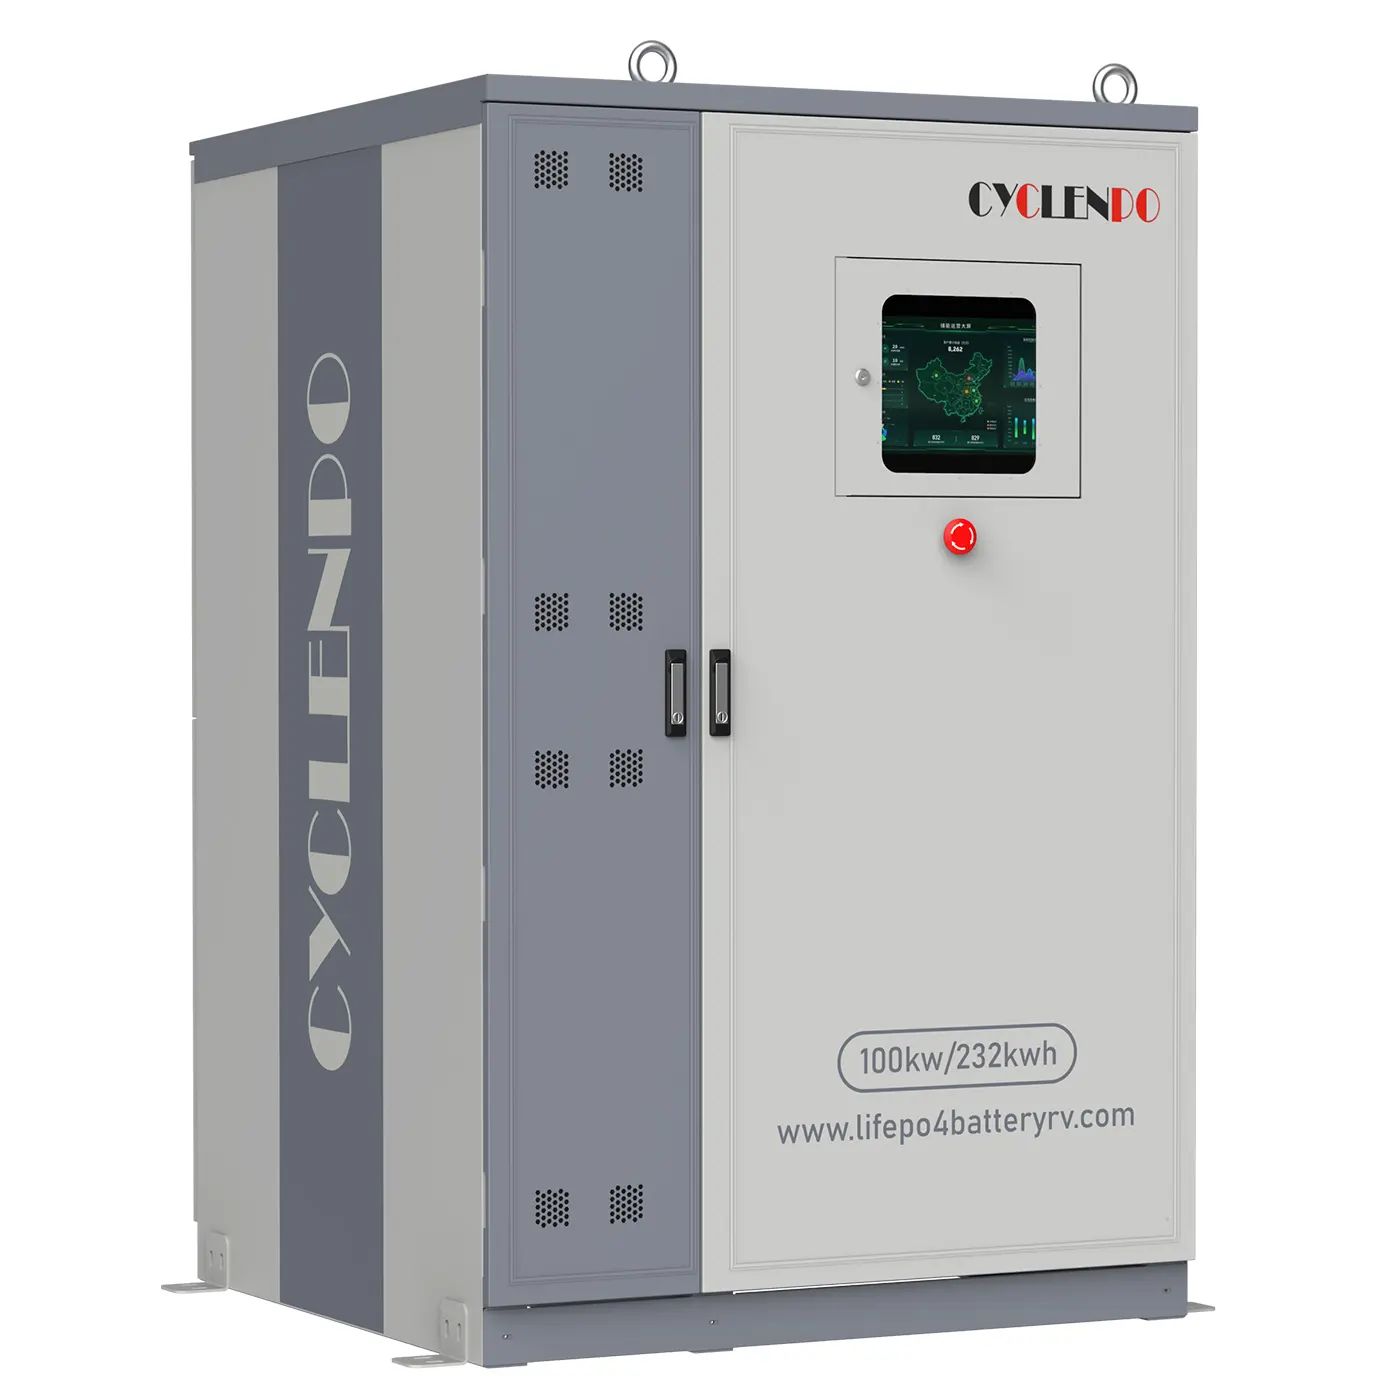 OEM 100 kwh 232 kwh kommerzieller industrieller Energiespeicher intelligentes Lifepo4-Batterie-System